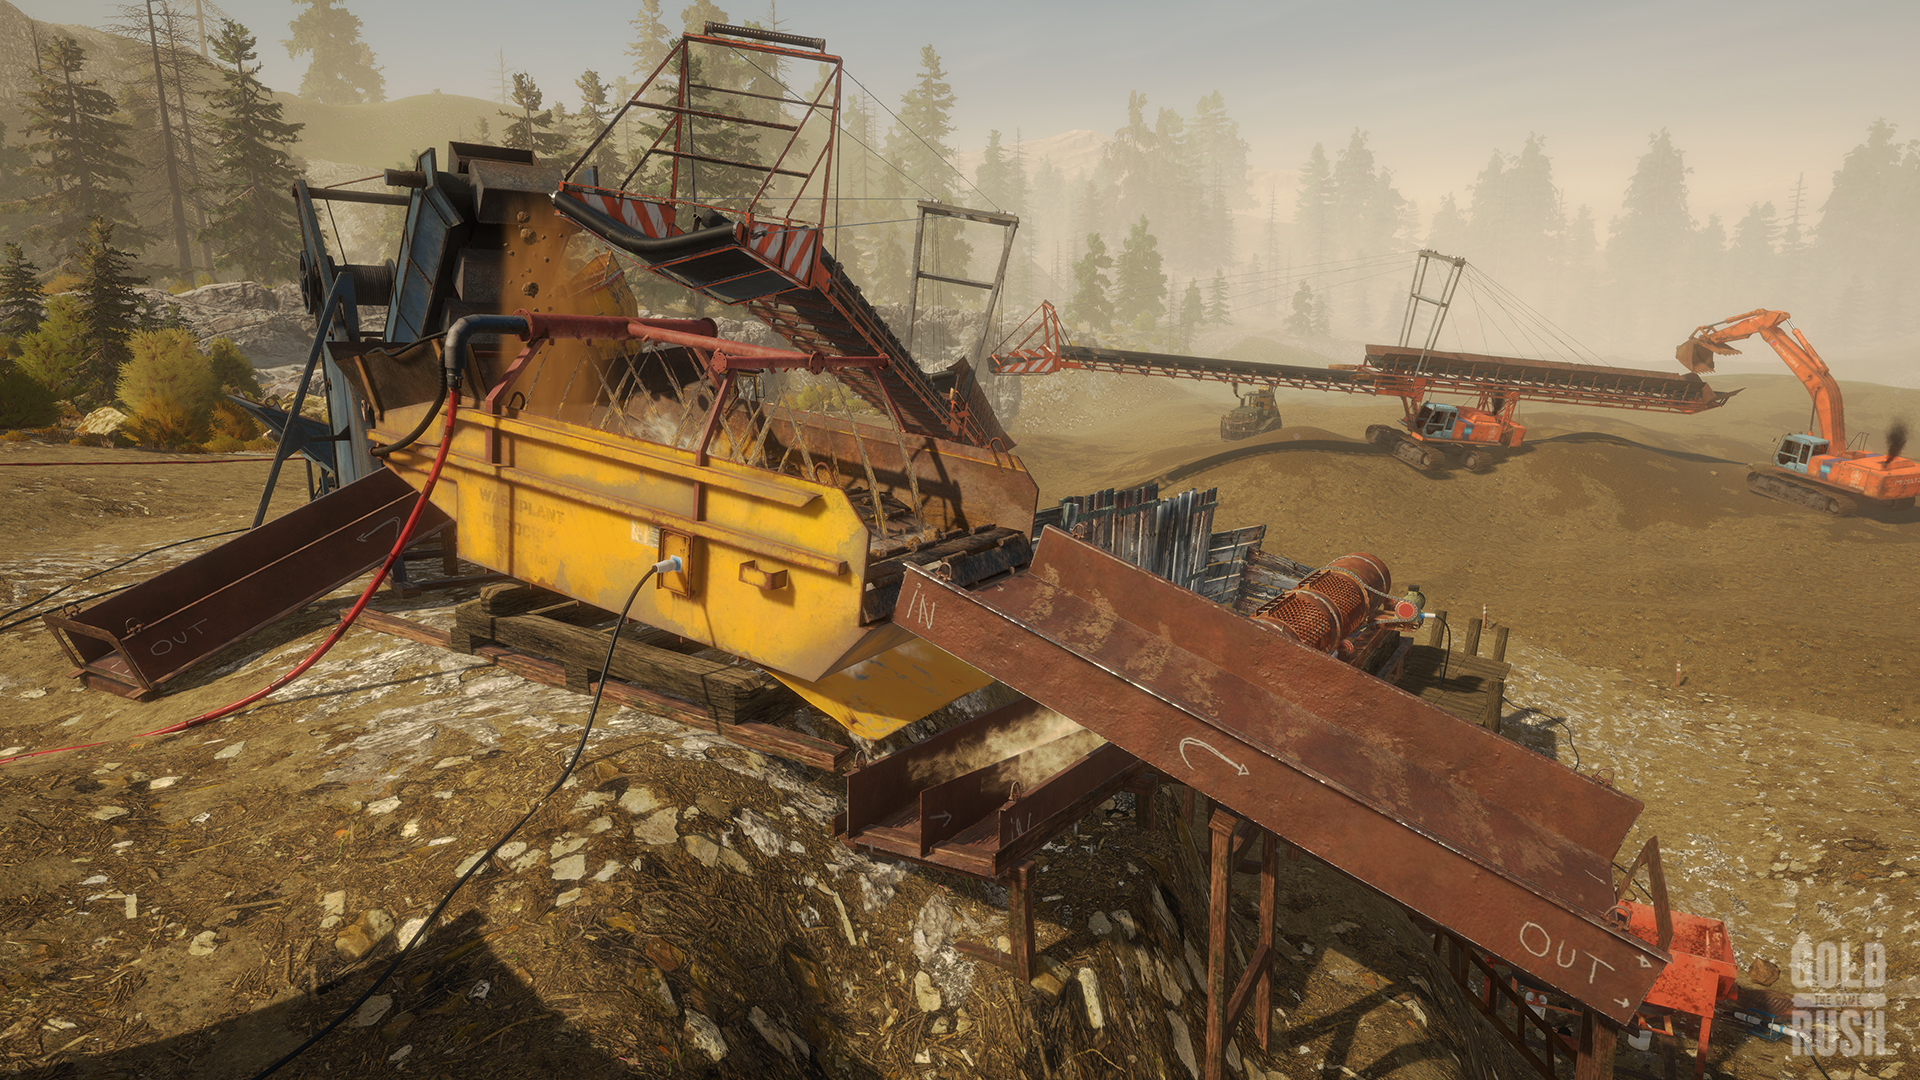 Gold Rush: The Game - Frankenstein Machinery screenshot